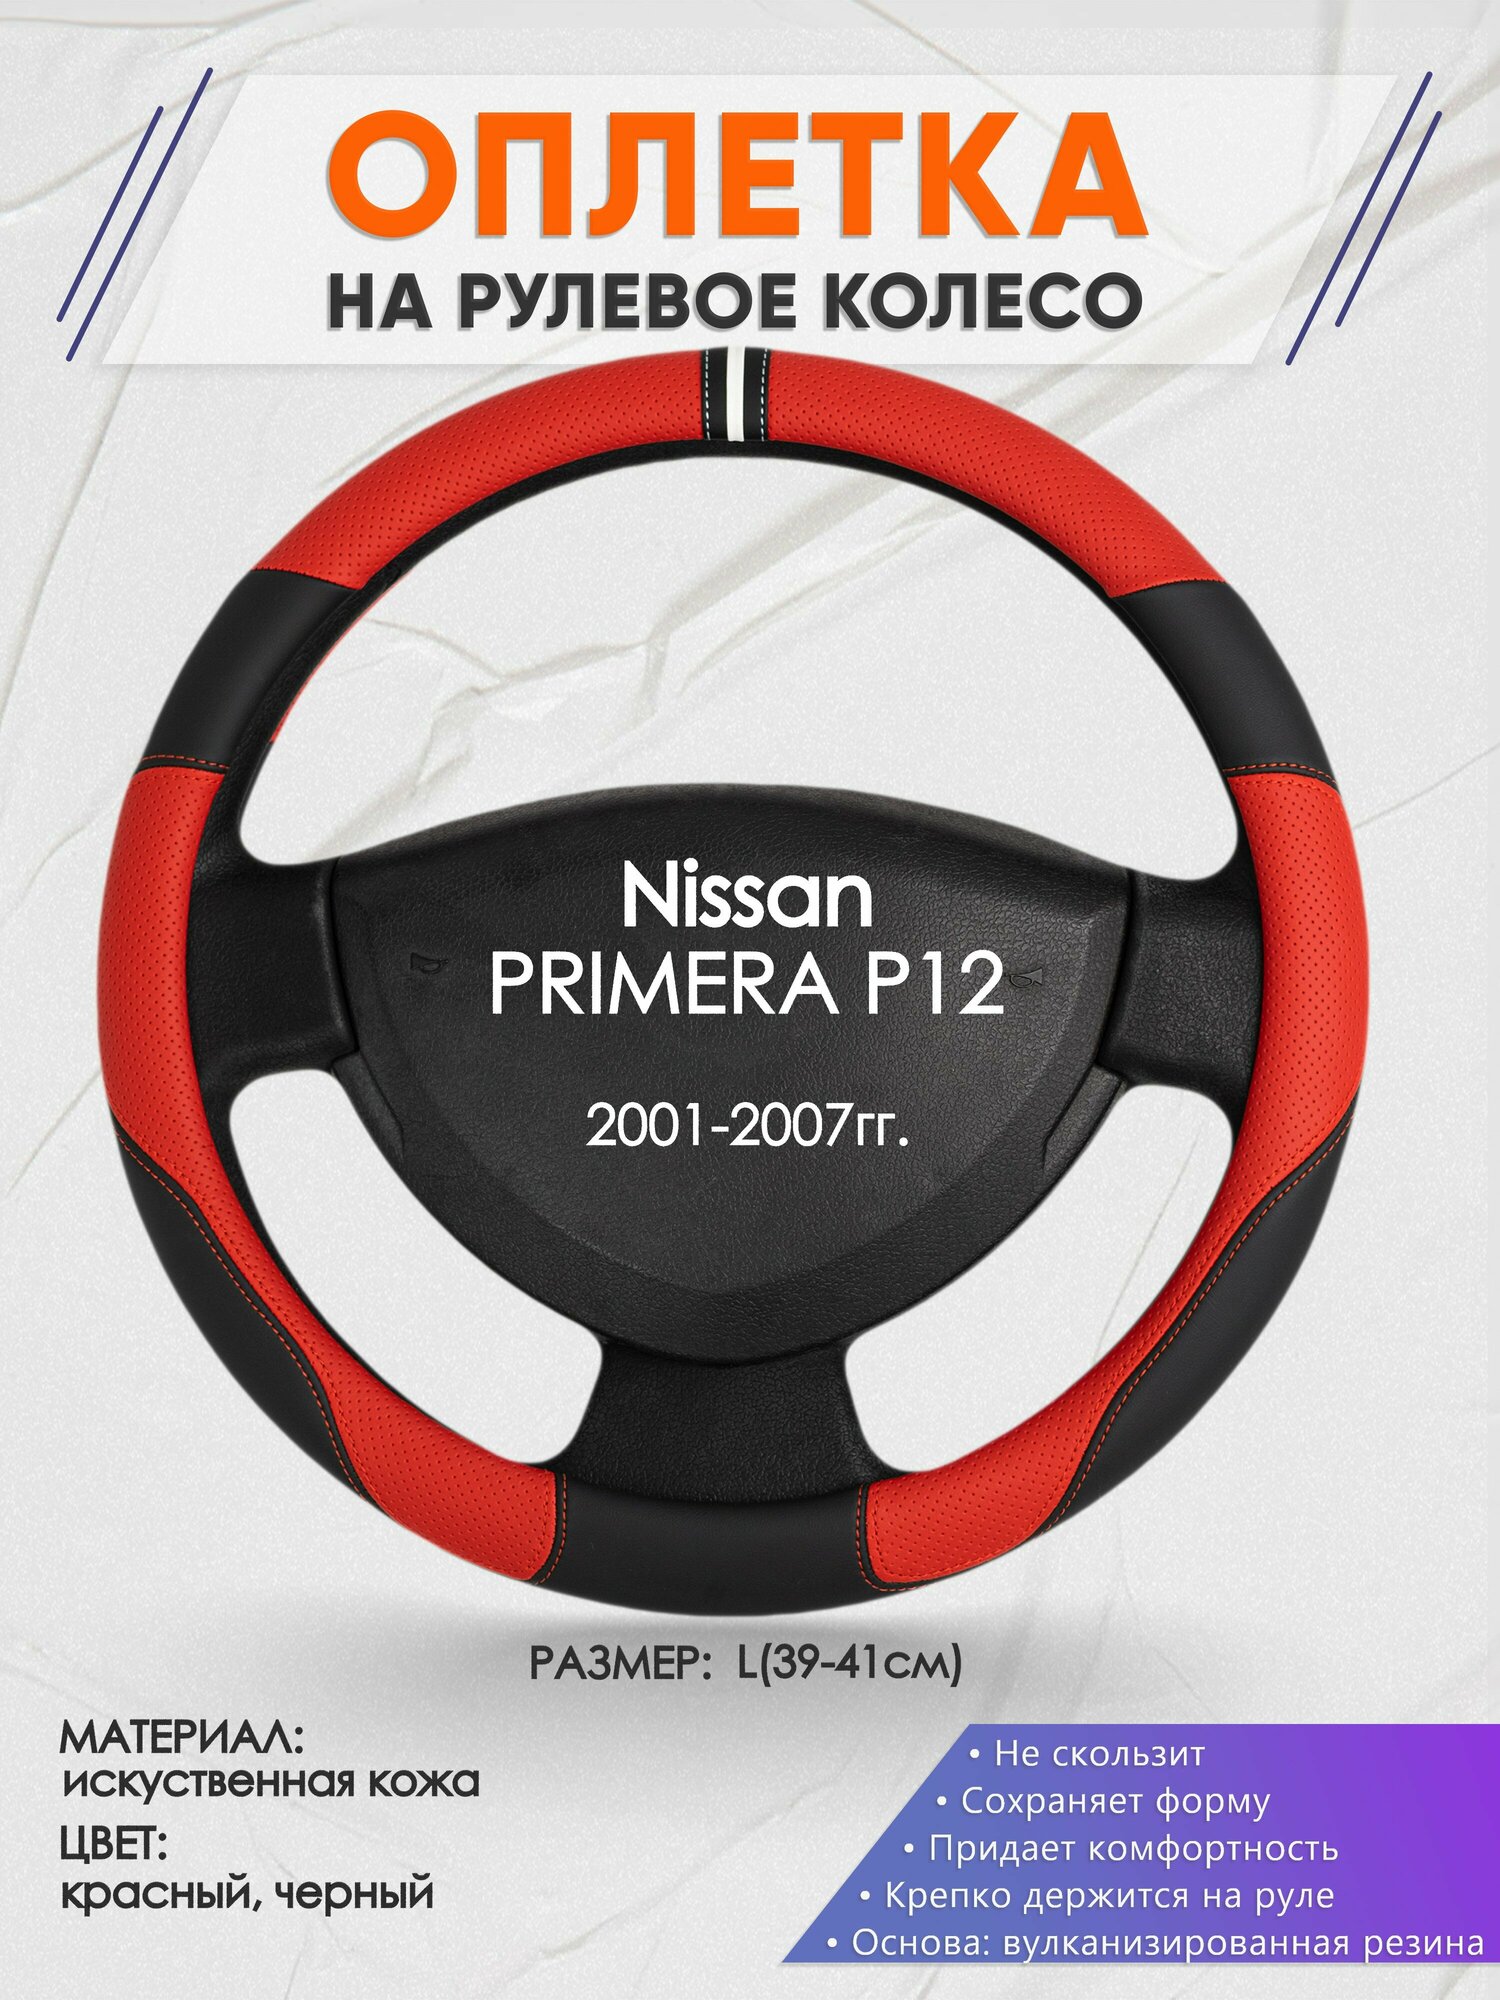 Оплетка на руль для Nissan PRIMERA P12(Ниссан Примера Р12) 2001-2007, L(39-41см), Искусственная кожа 04